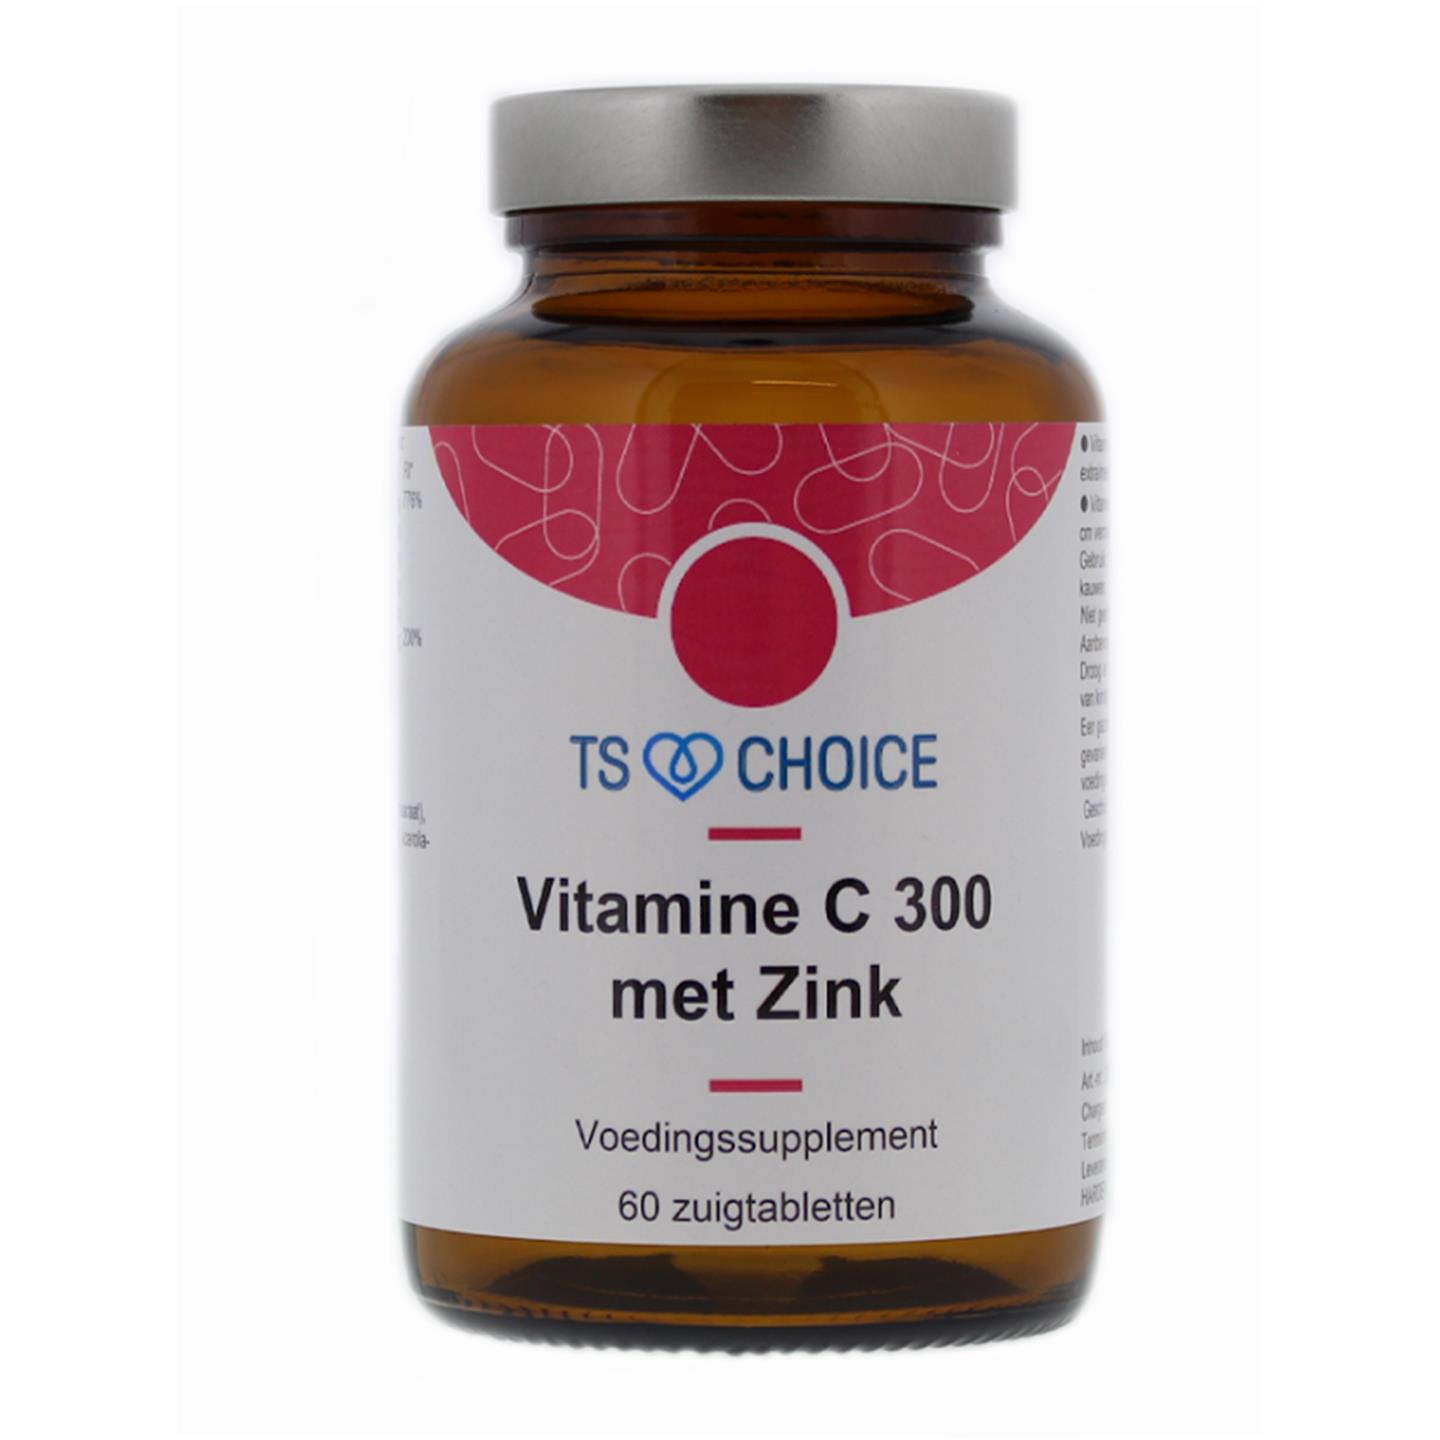 Vitamine C 300 met Zink